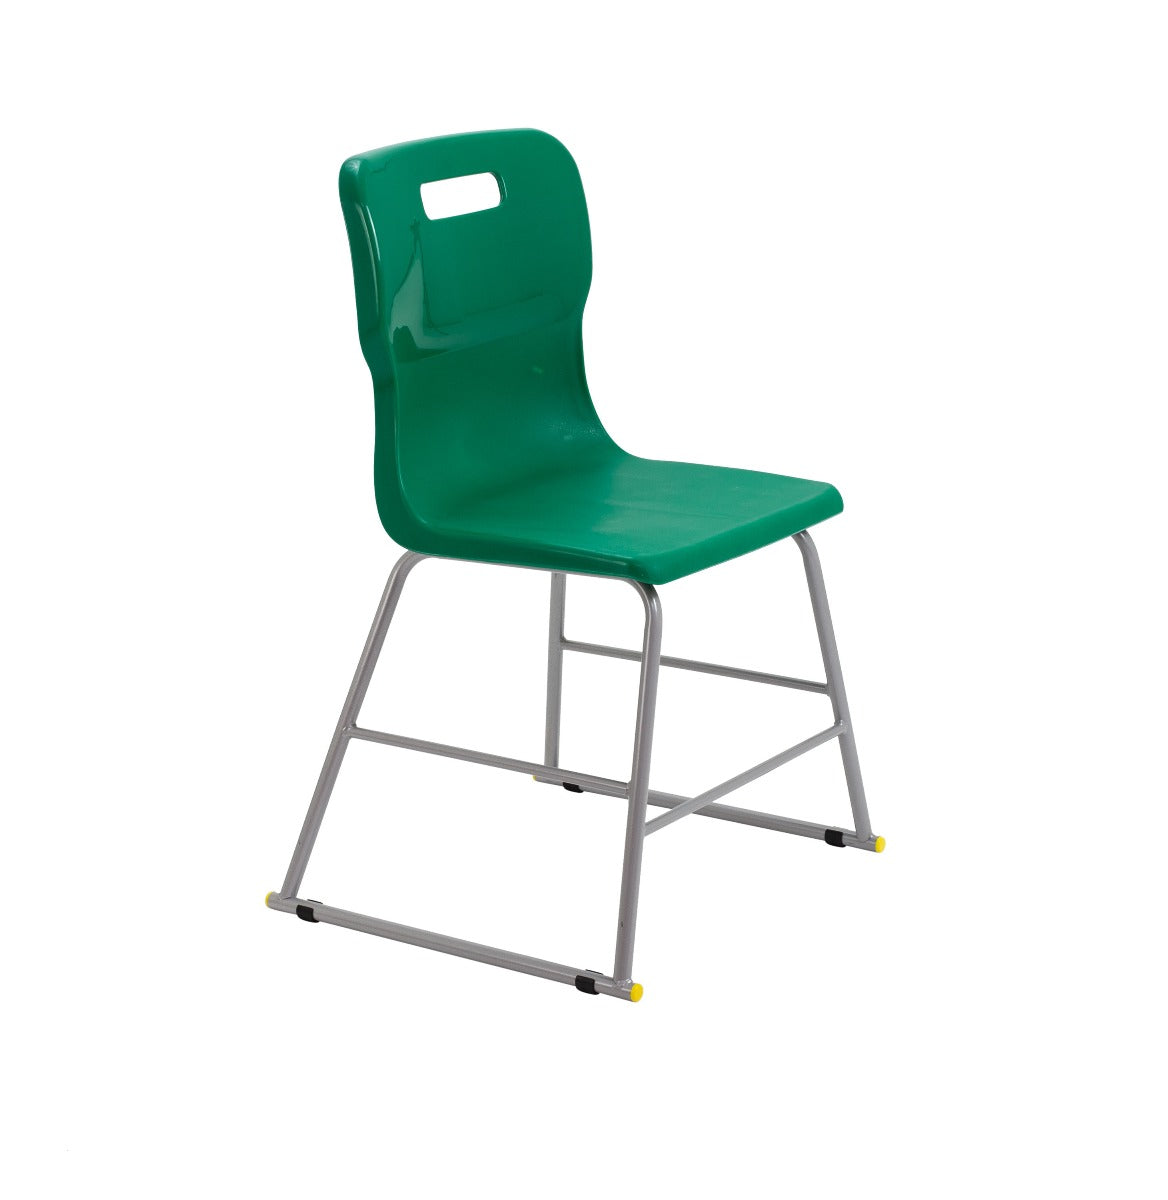 Titan Classroom High Chair